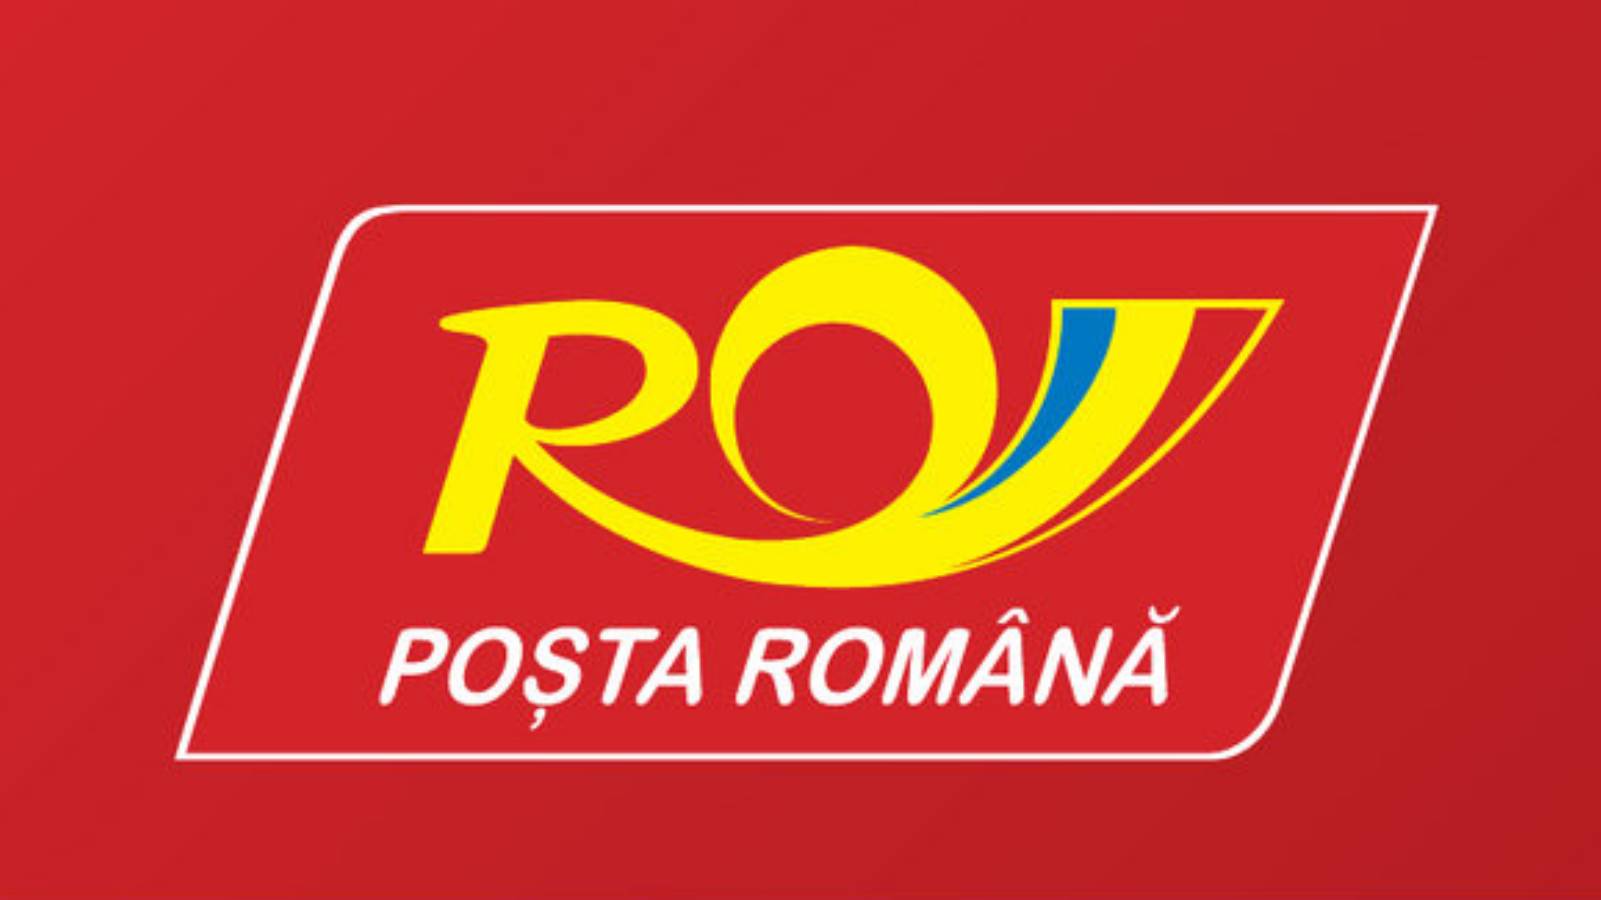 Posizione delle poste rumene